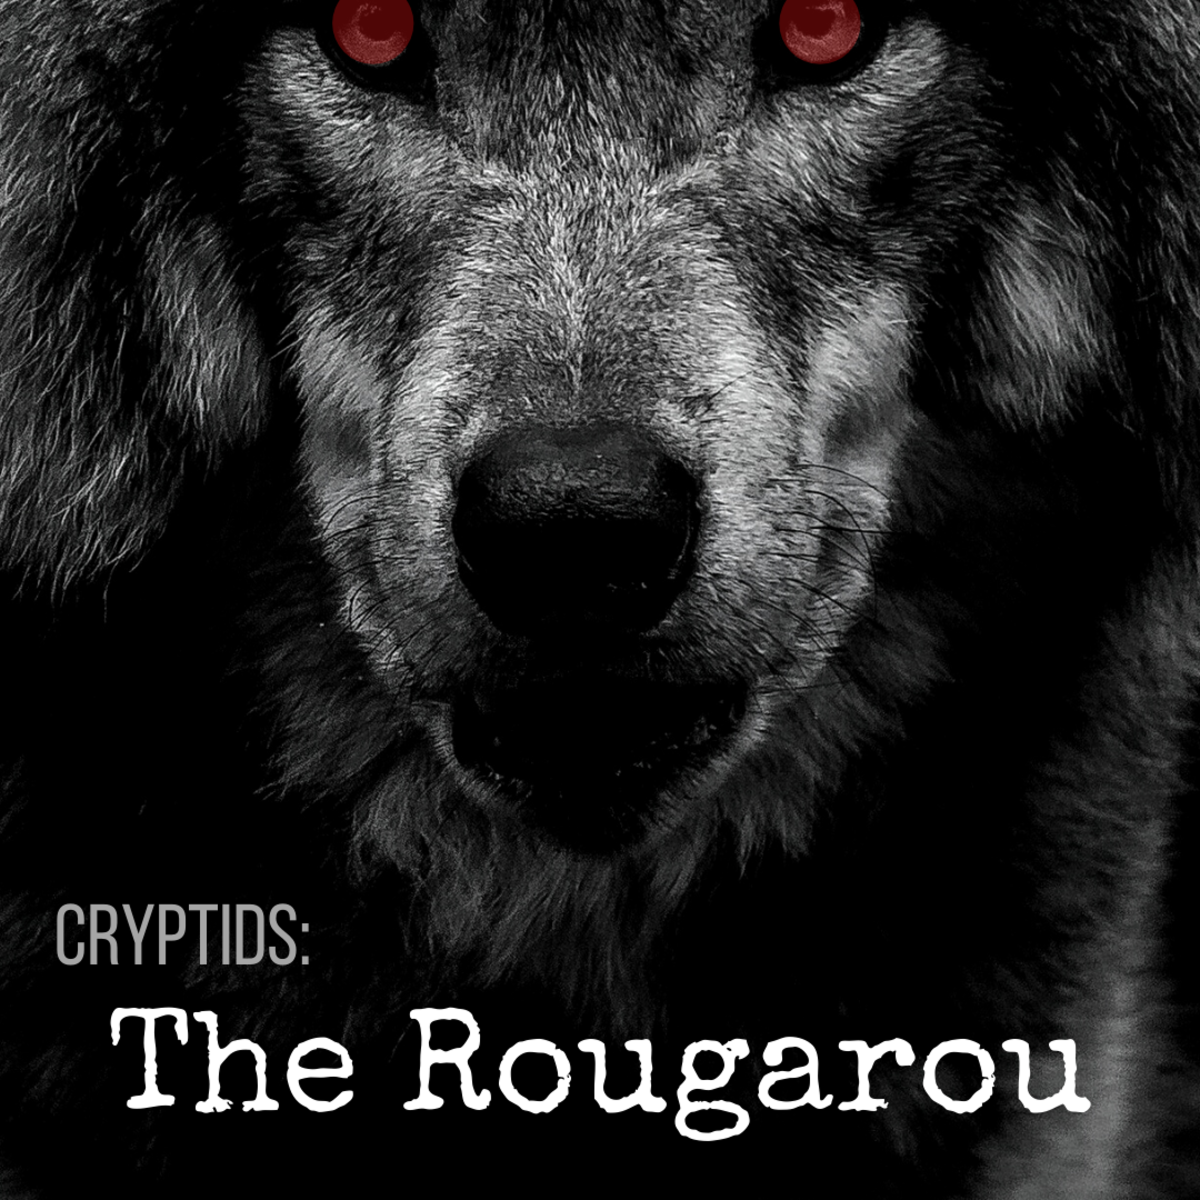 The Rougarou: Louisiana's Cajun Werewolf